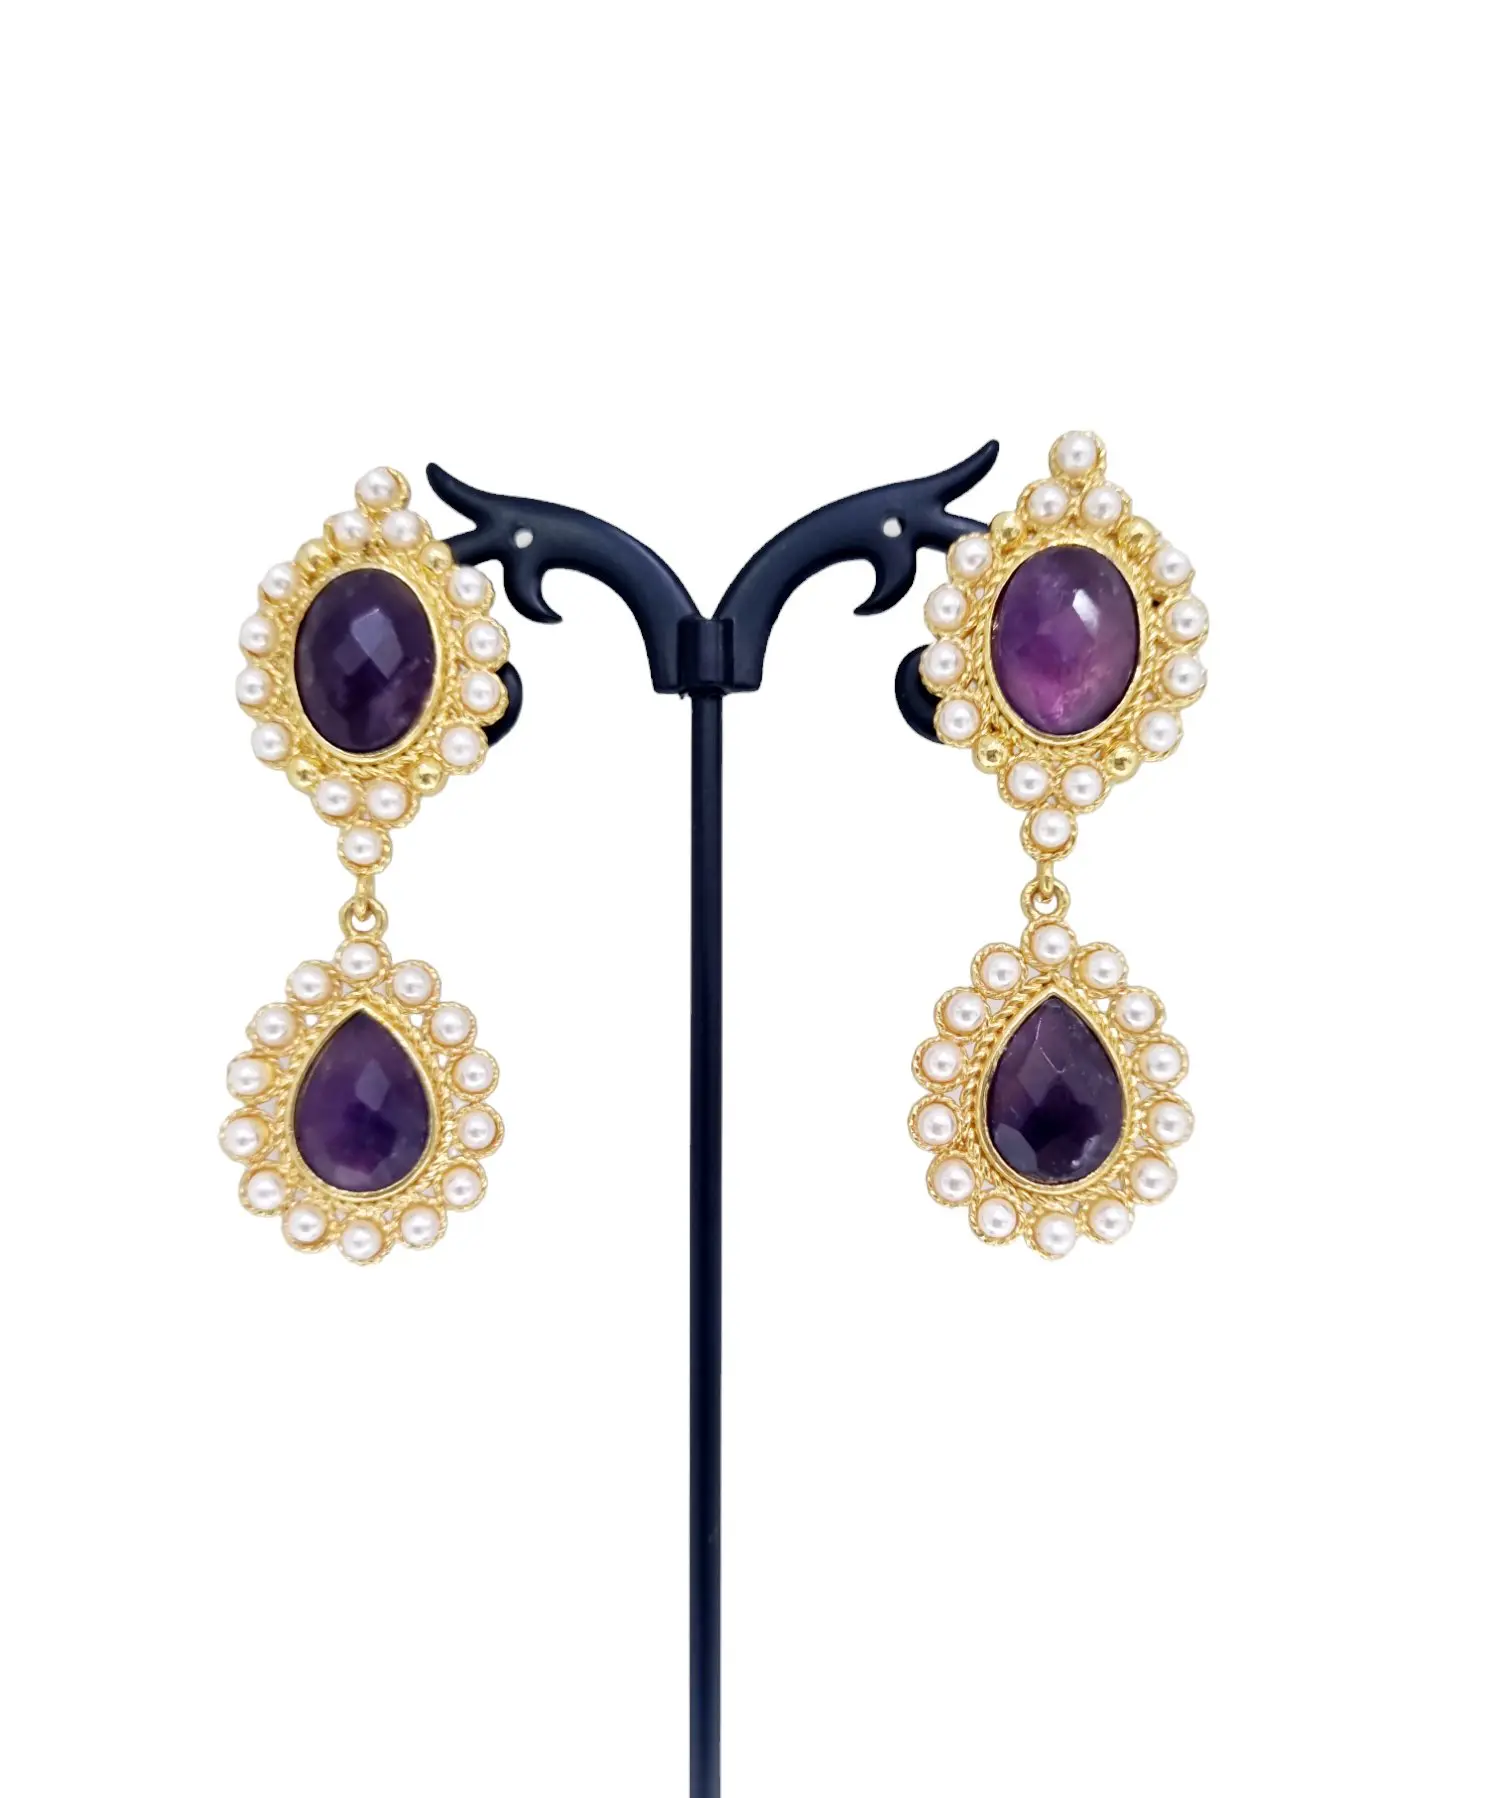 Boucles d'oreilles améthyste et perles de Majorque serties sur laiton – Accessoire élégant et sophistiqué